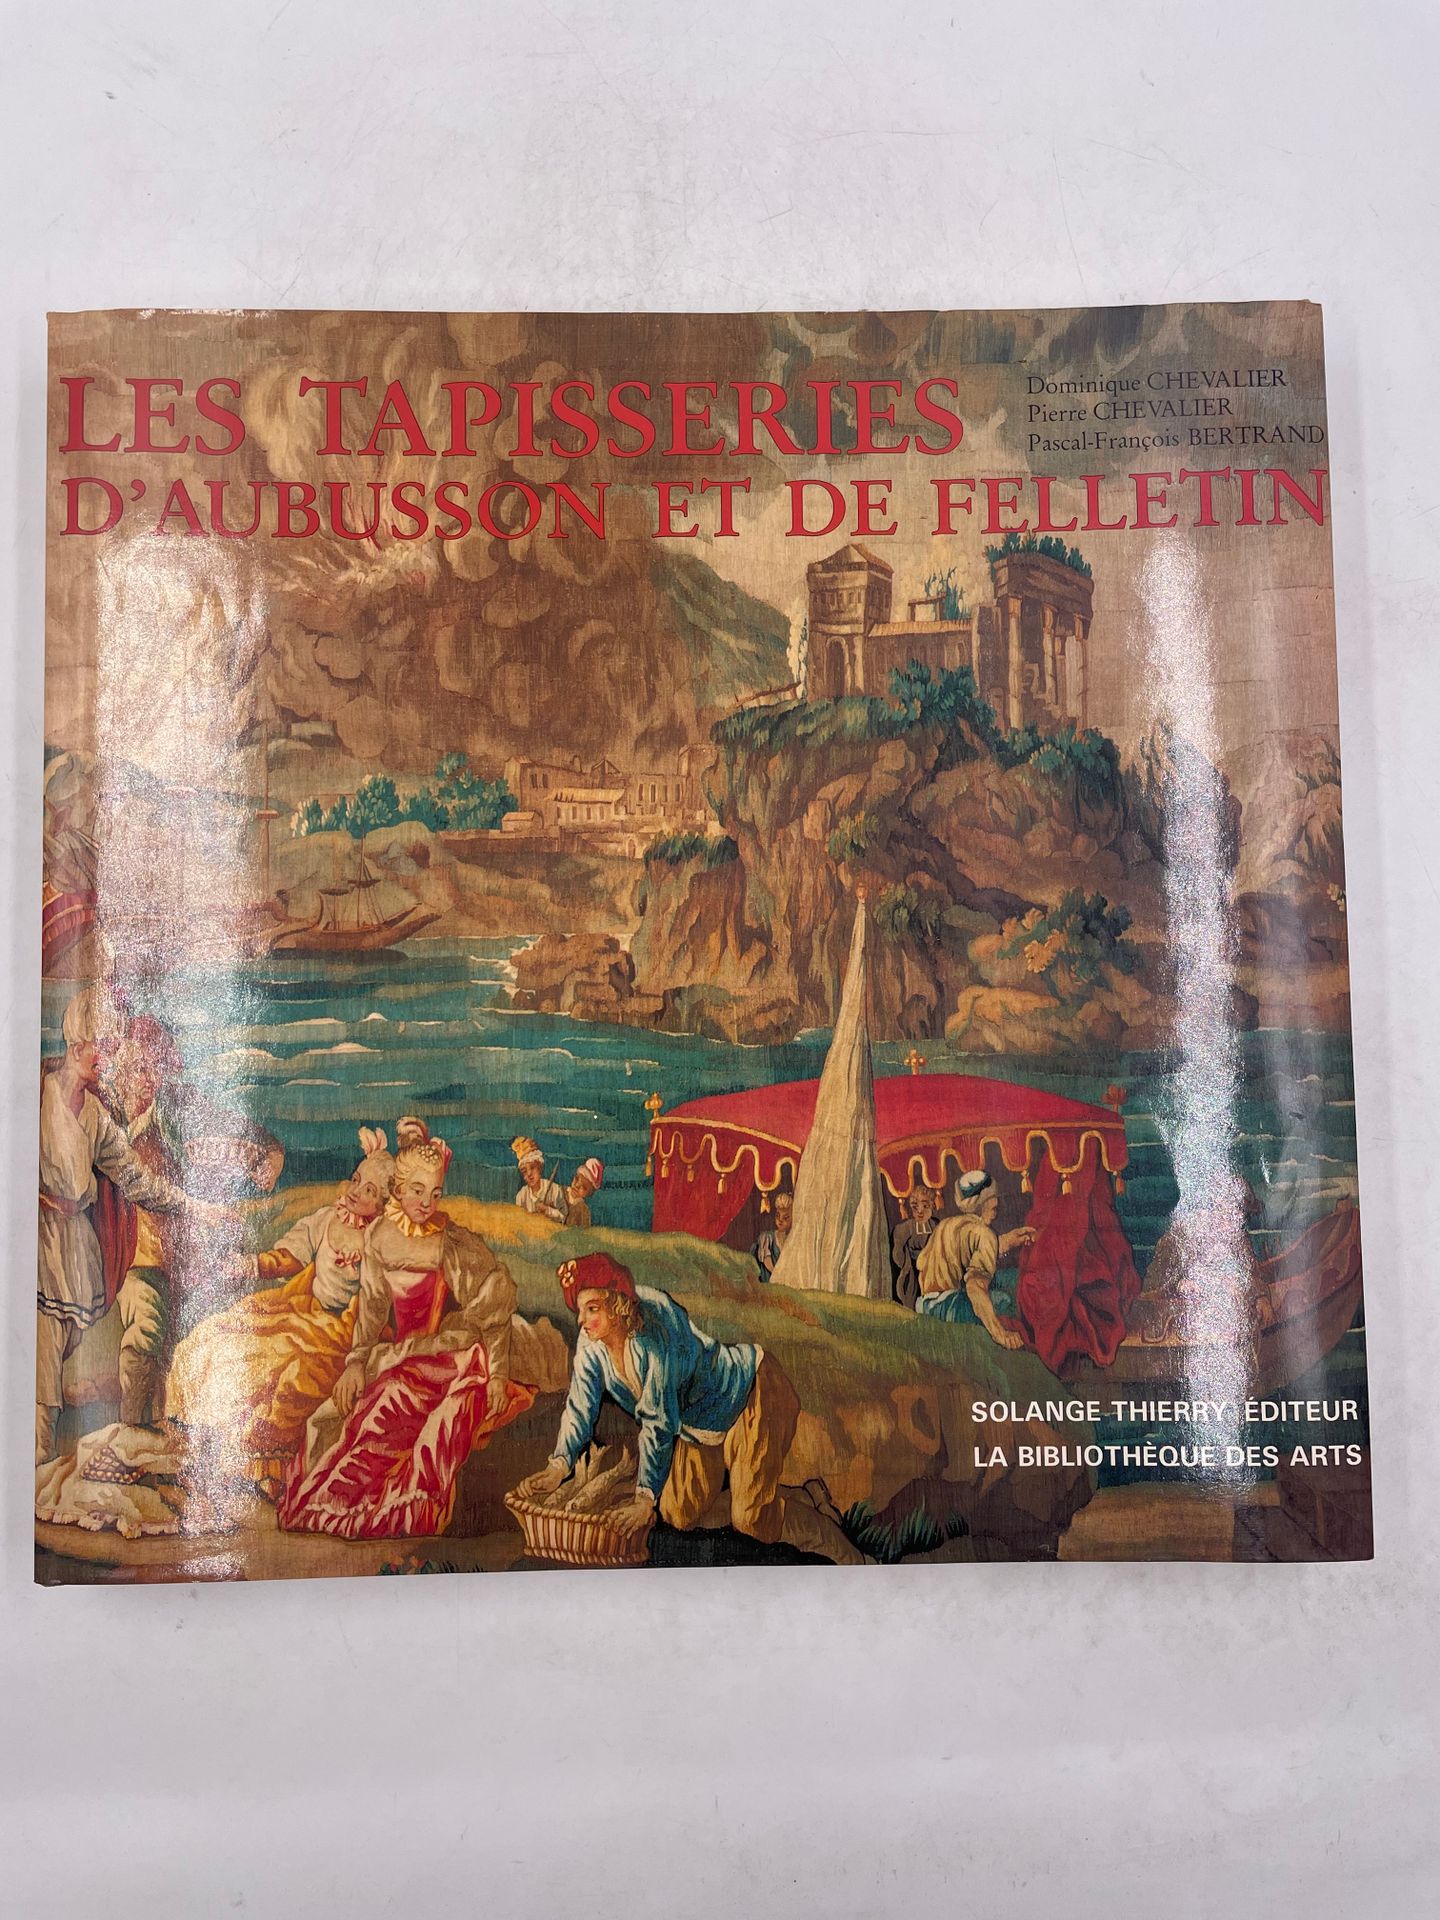 Null "Les tapisseries d'Aubusson et de Felletin"，Dominique Chevalier、Pierre Chev&hellip;